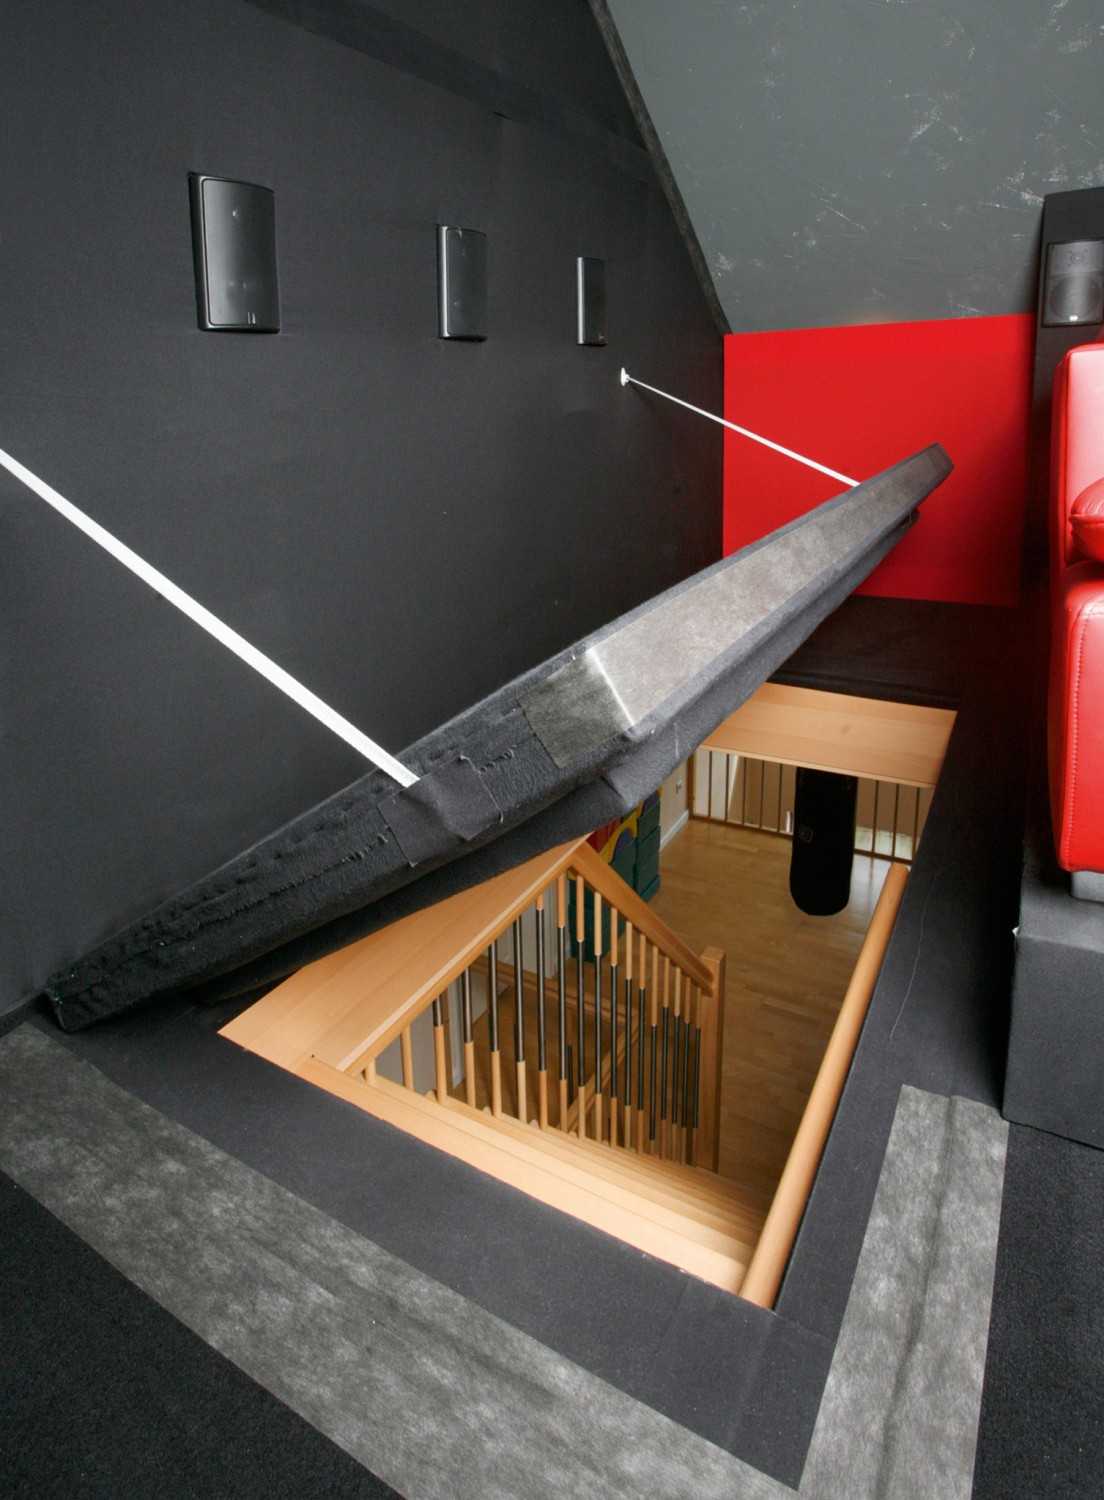 Ratgeber Nice Surprise: 3D-Dachbodenkino mit Suchtfaktor, ein Klanghammer - News, Bild 4